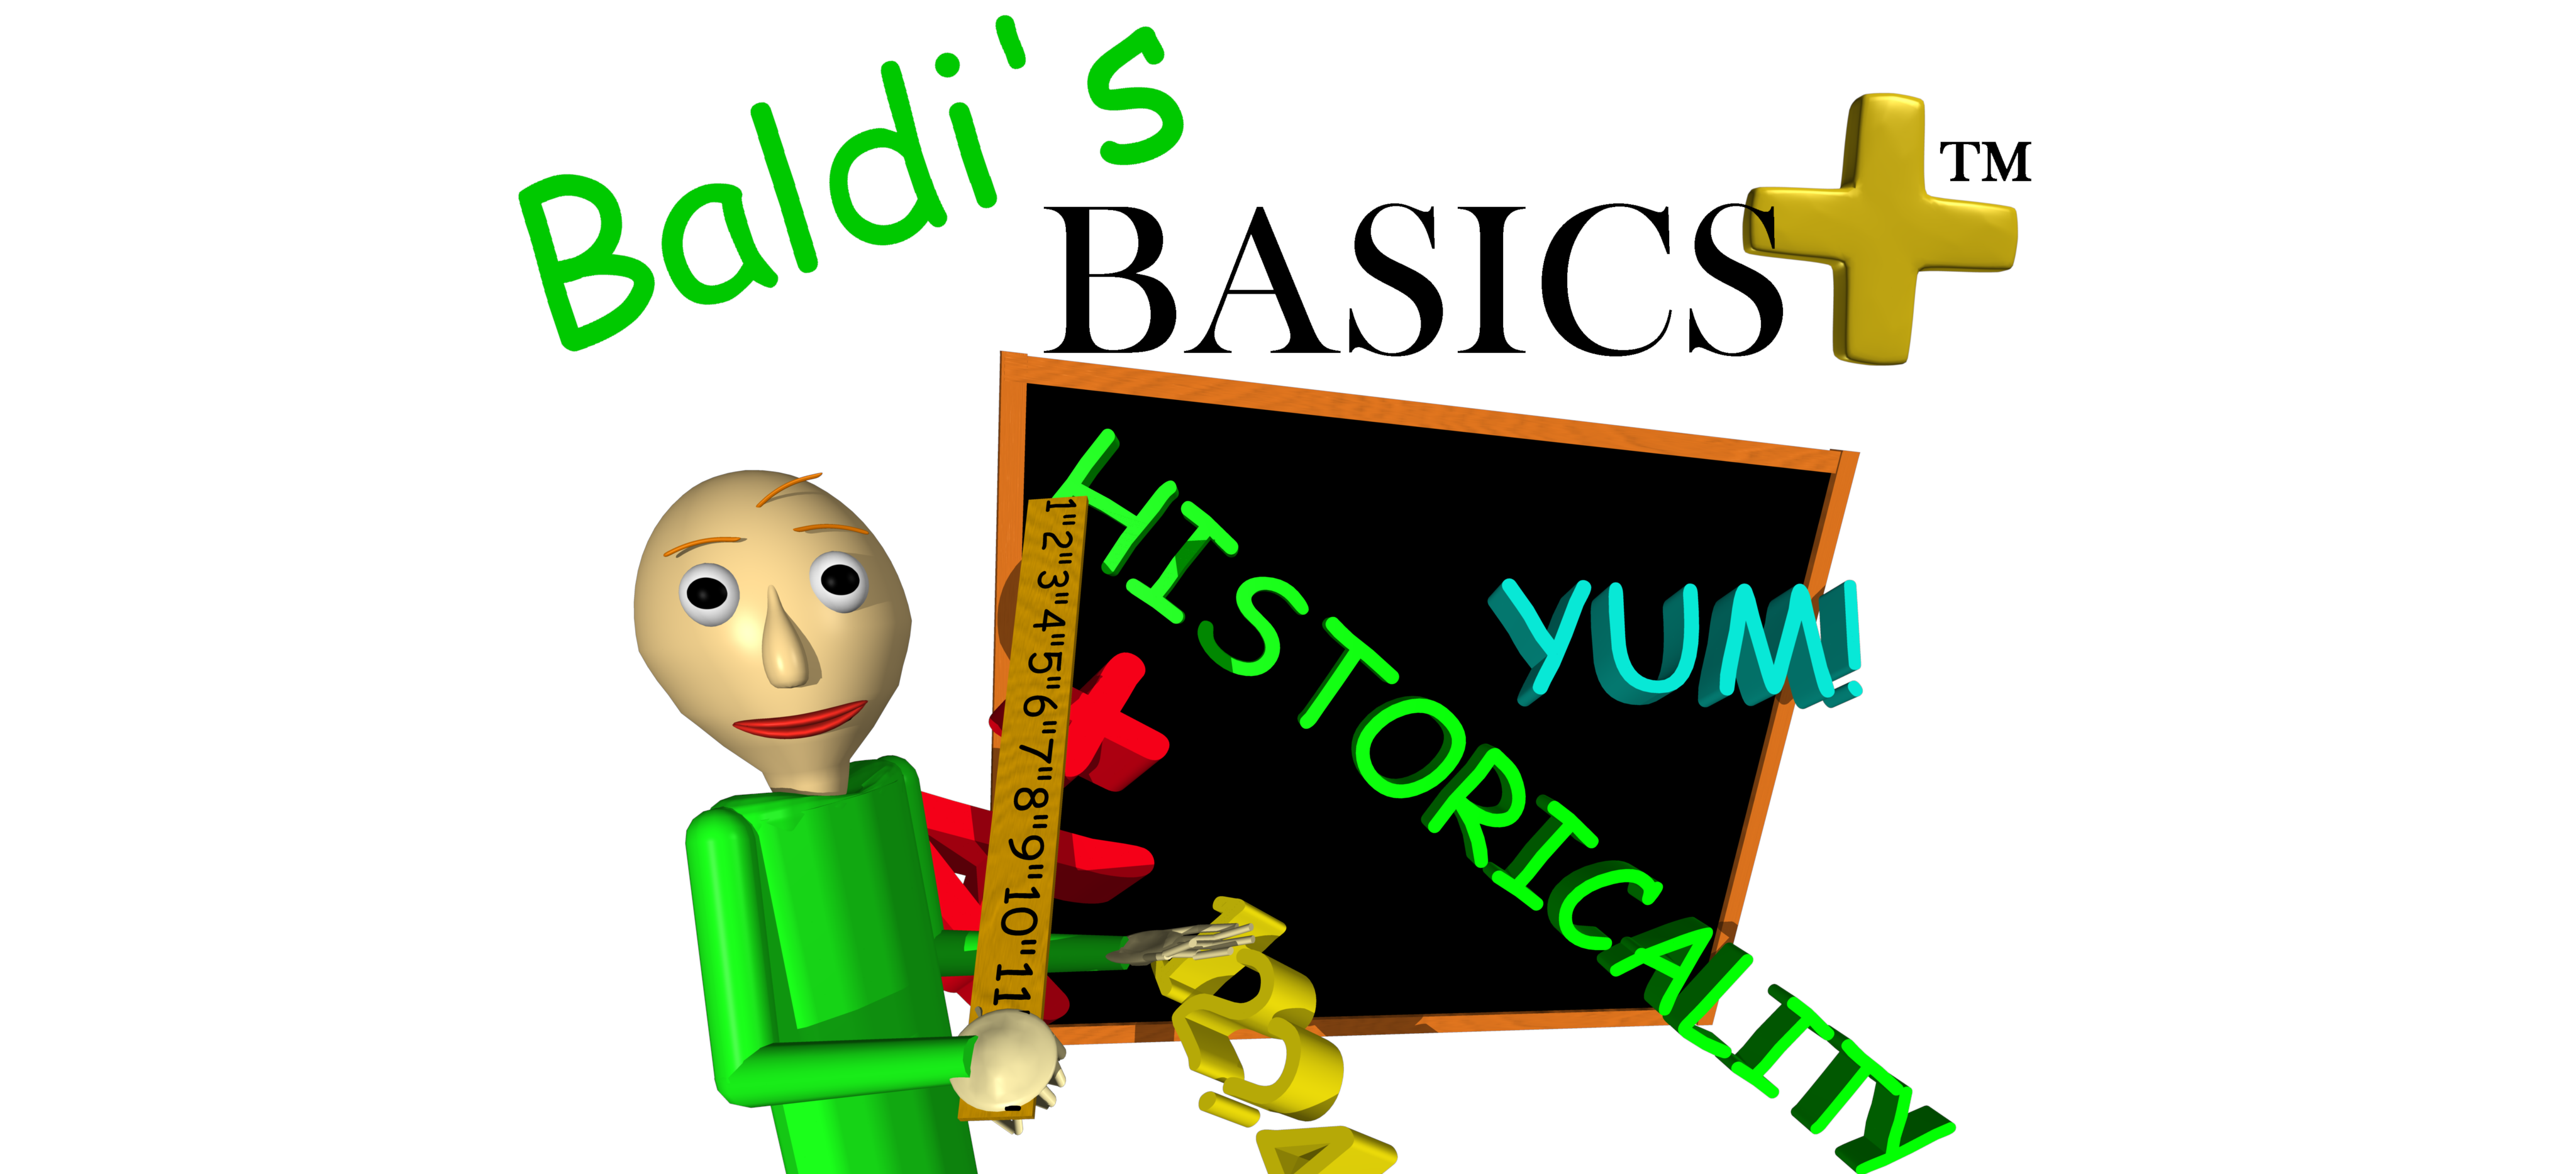 Baldi's Basics Quiz